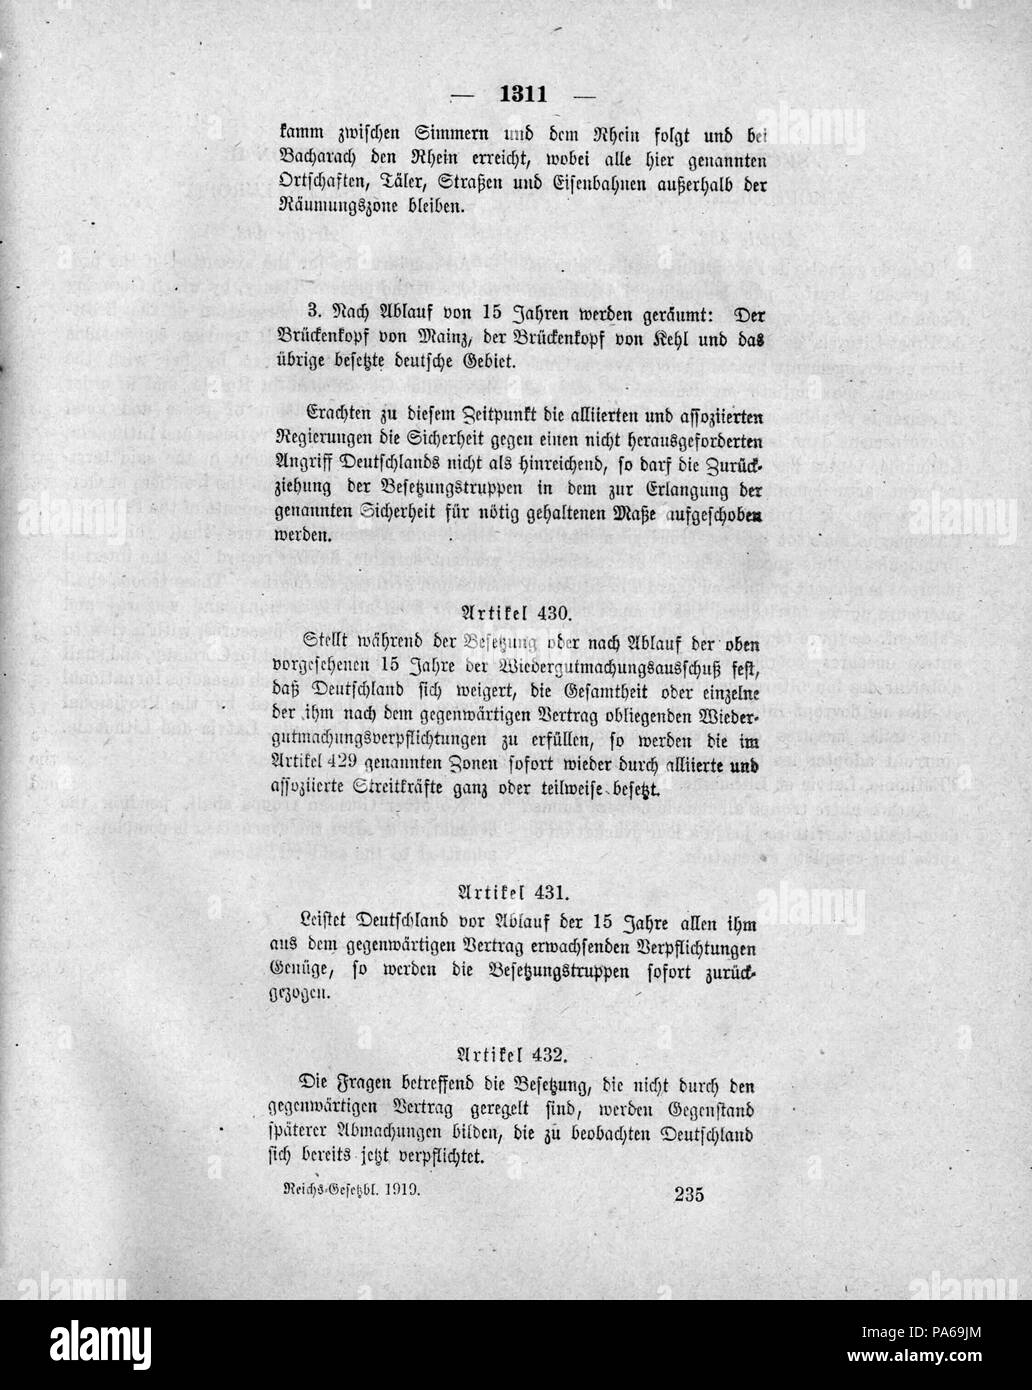 493 Deutsches Reichsgesetzblatt 1919 140 1311 Foto Stock